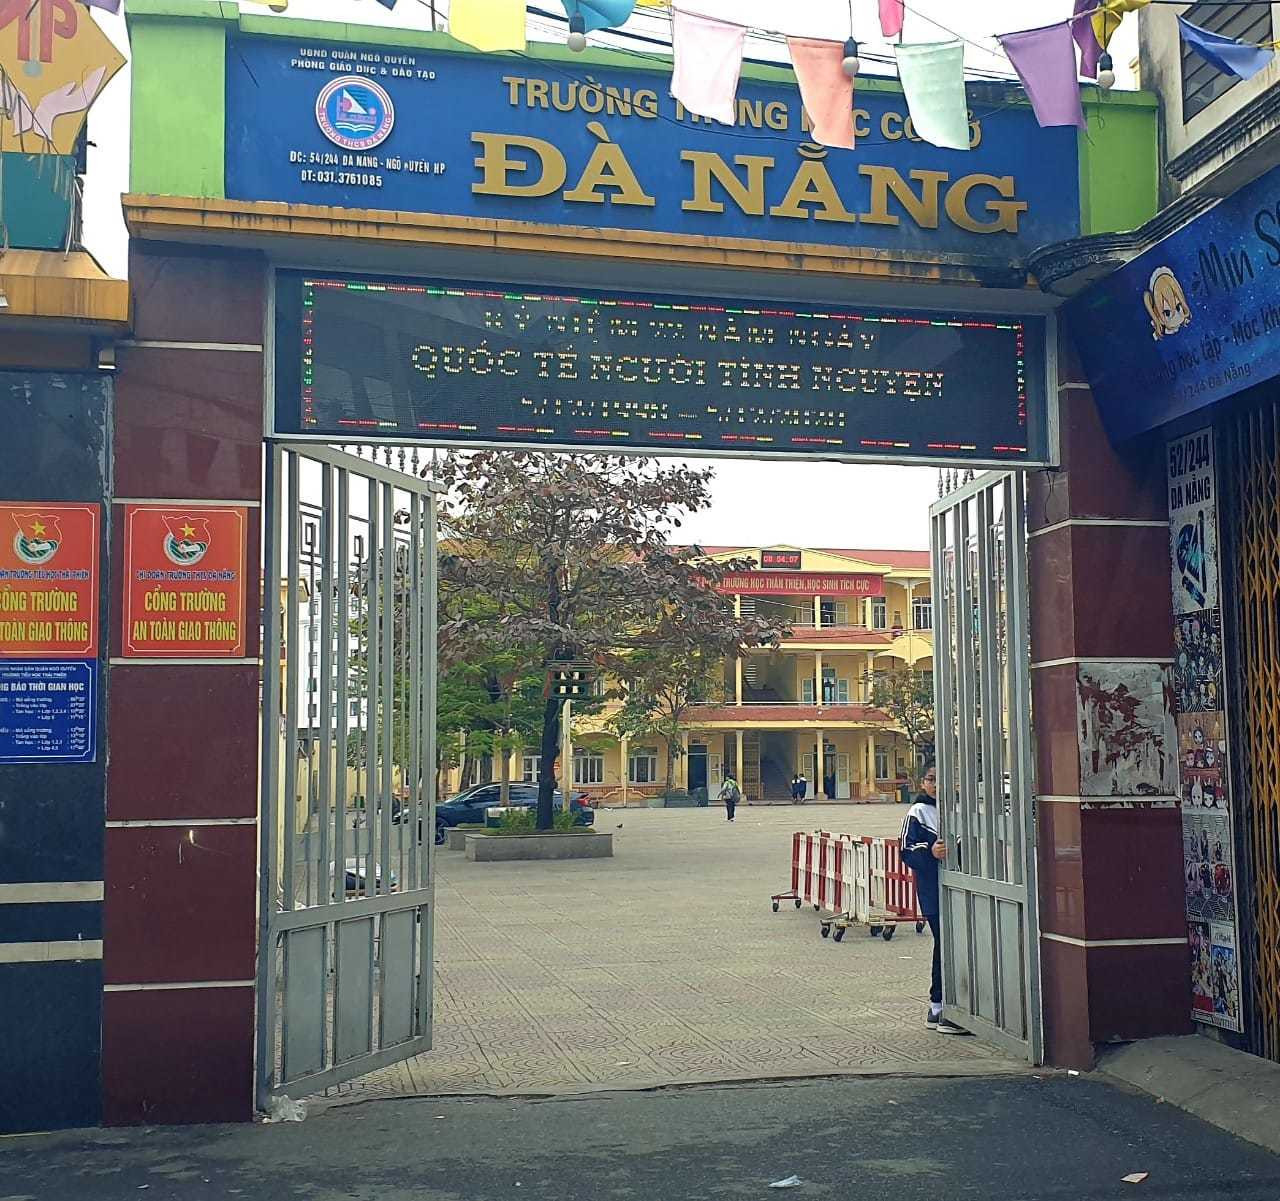 Trường THCS Đà Nẵng, nơi xảy ra sự việc